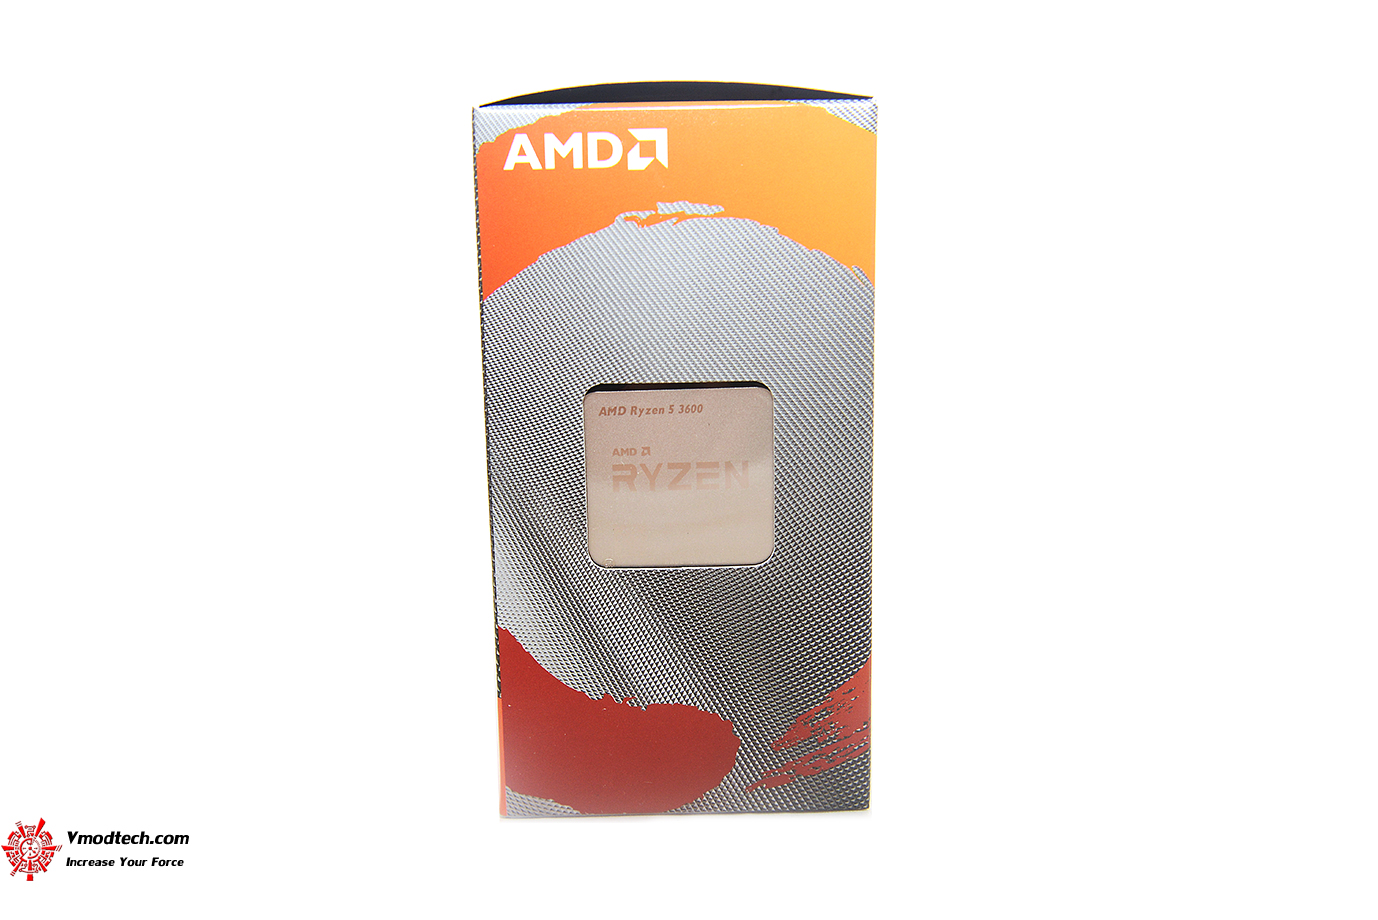 dsc 89363 AMD RYZEN 5 3600 PROCESSOR REVIEW 